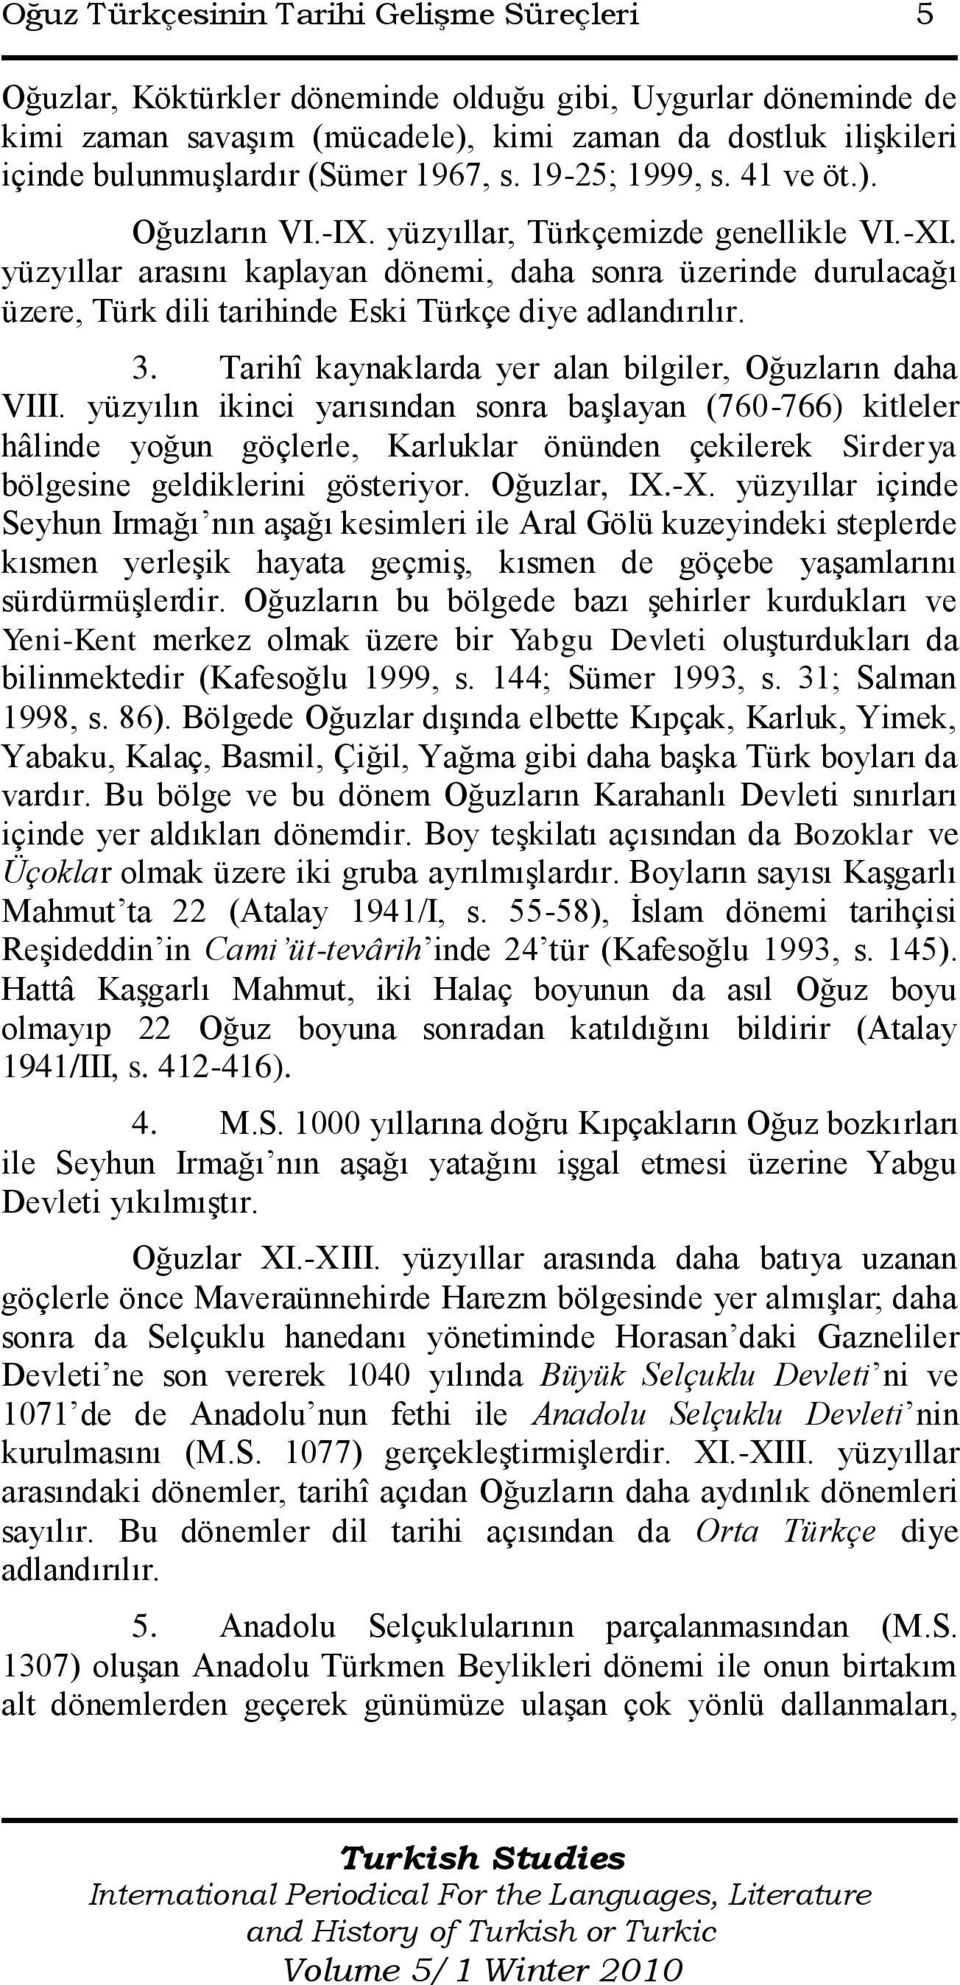 yüzyıllar arasını kaplayan dönemi, daha sonra üzerinde durulacağı üzere, Türk dili tarihinde Eski Türkçe diye adlandırılır. 3. Tarihî kaynaklarda yer alan bilgiler, Oğuzların daha VIII.